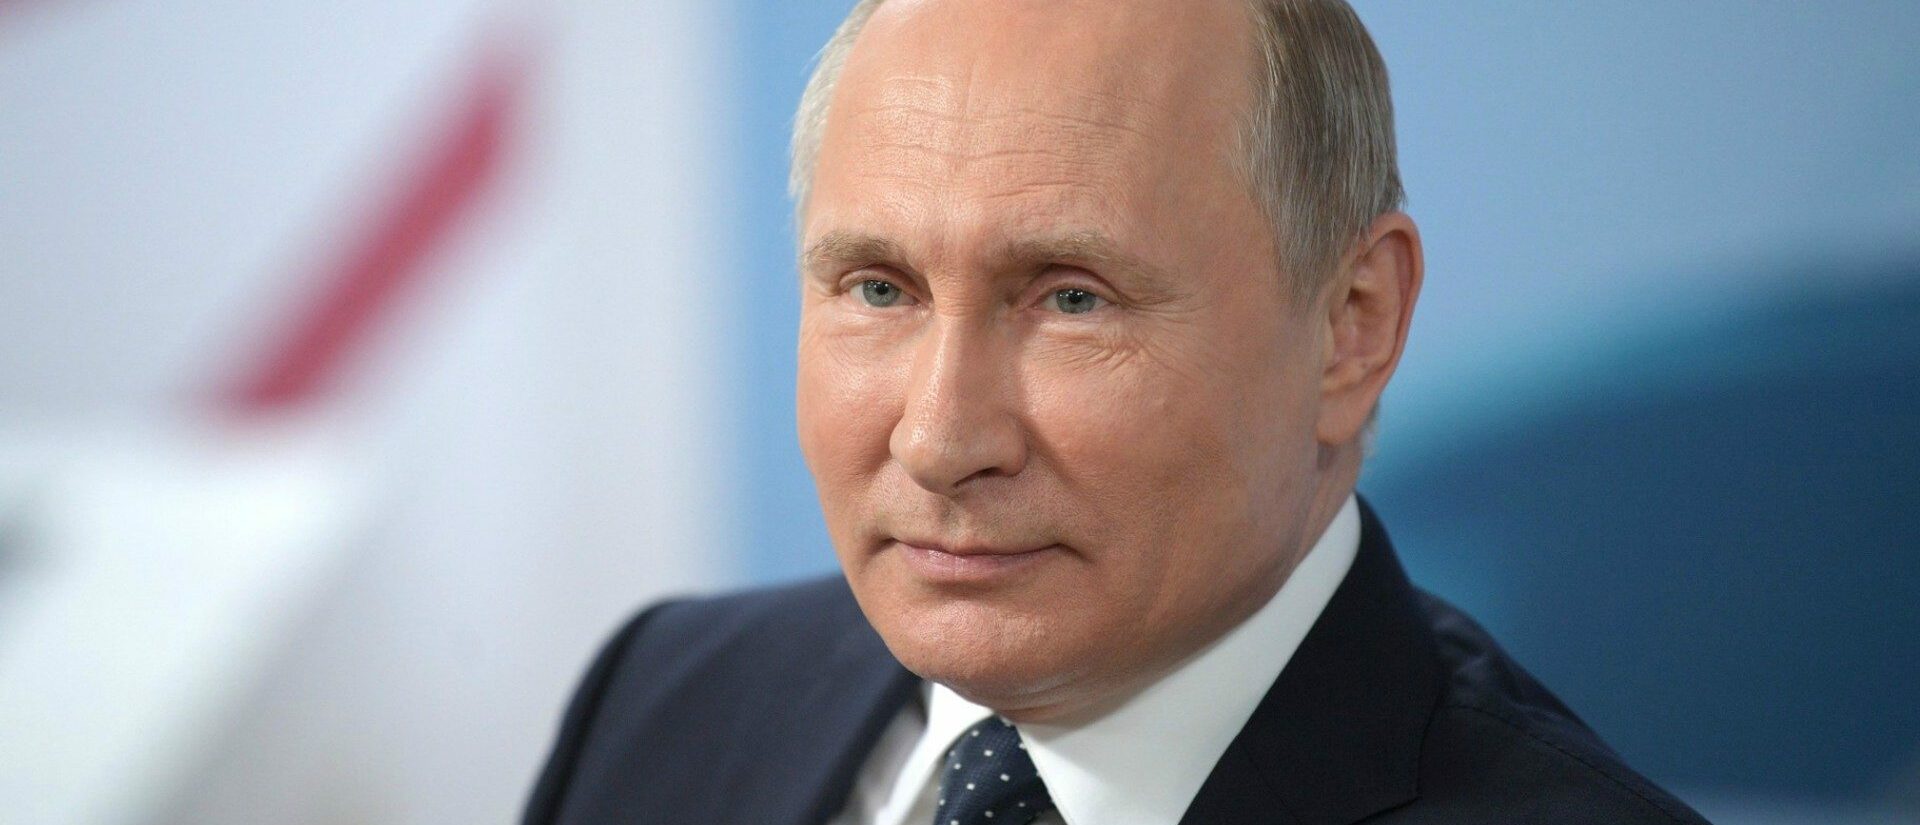 Le président Vladimir Poutine serait-il prêt à rencontrer le pape ? | © Russian Federation/Wikimedia/CC BY 4.0